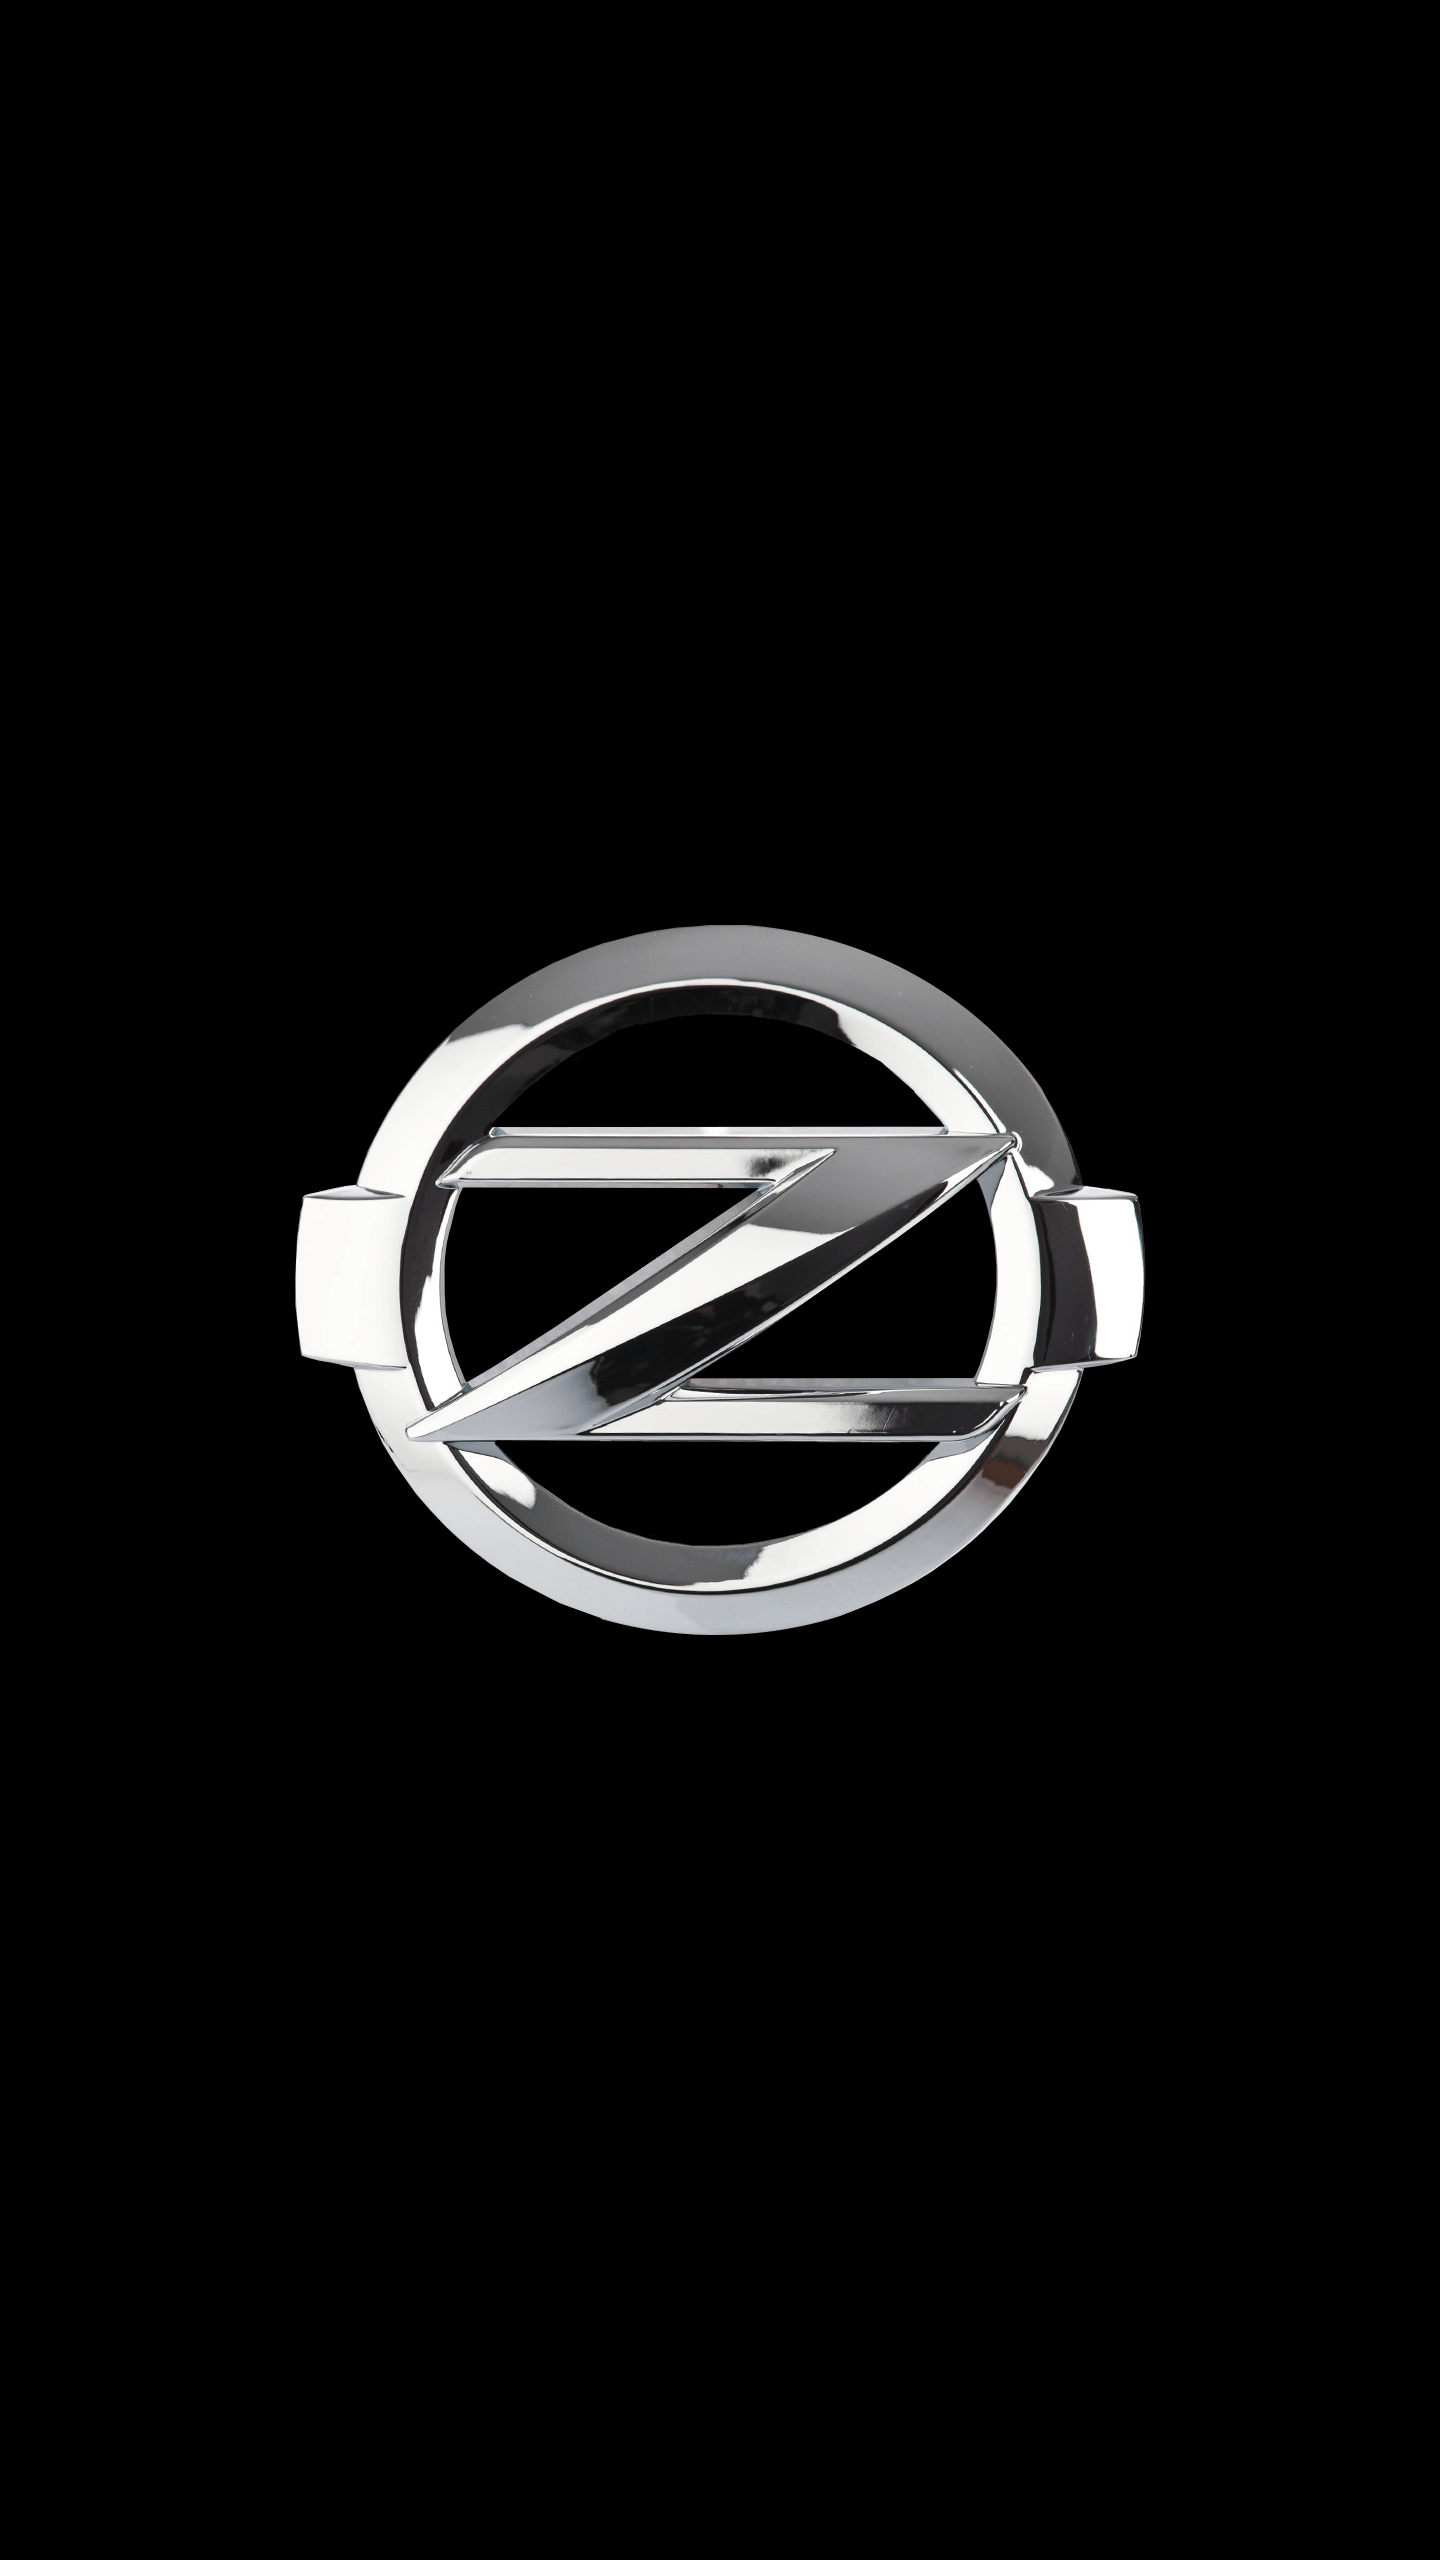 370Z Logo - Nissan 370Z Logo Request [1440x2560]